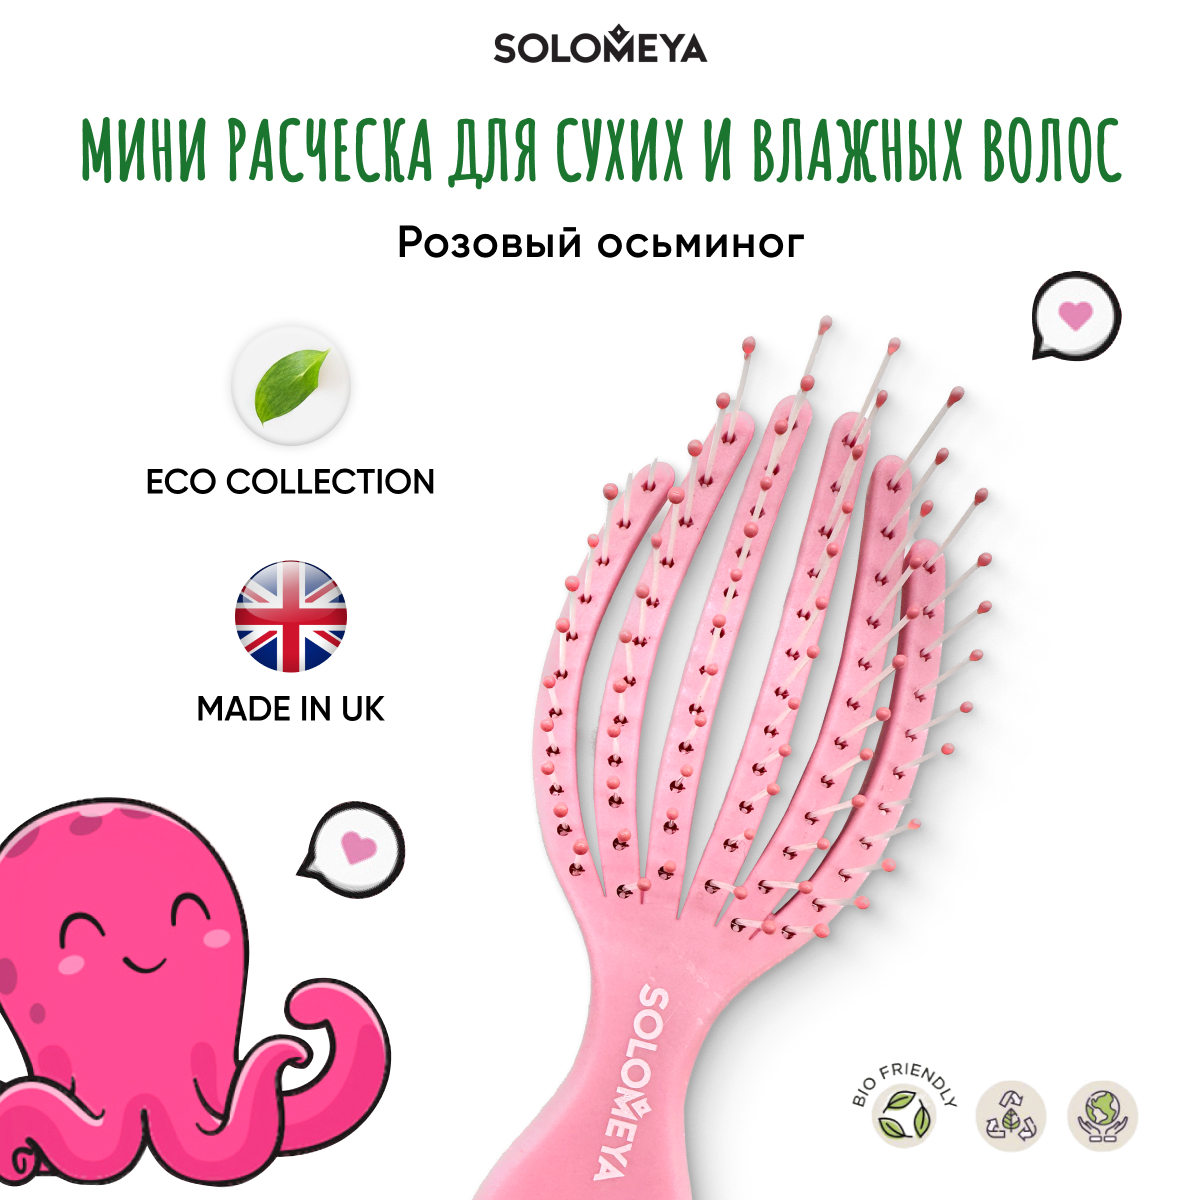 Расческа Solomeya для сухих и влажных волос мини Розовый Осьминог